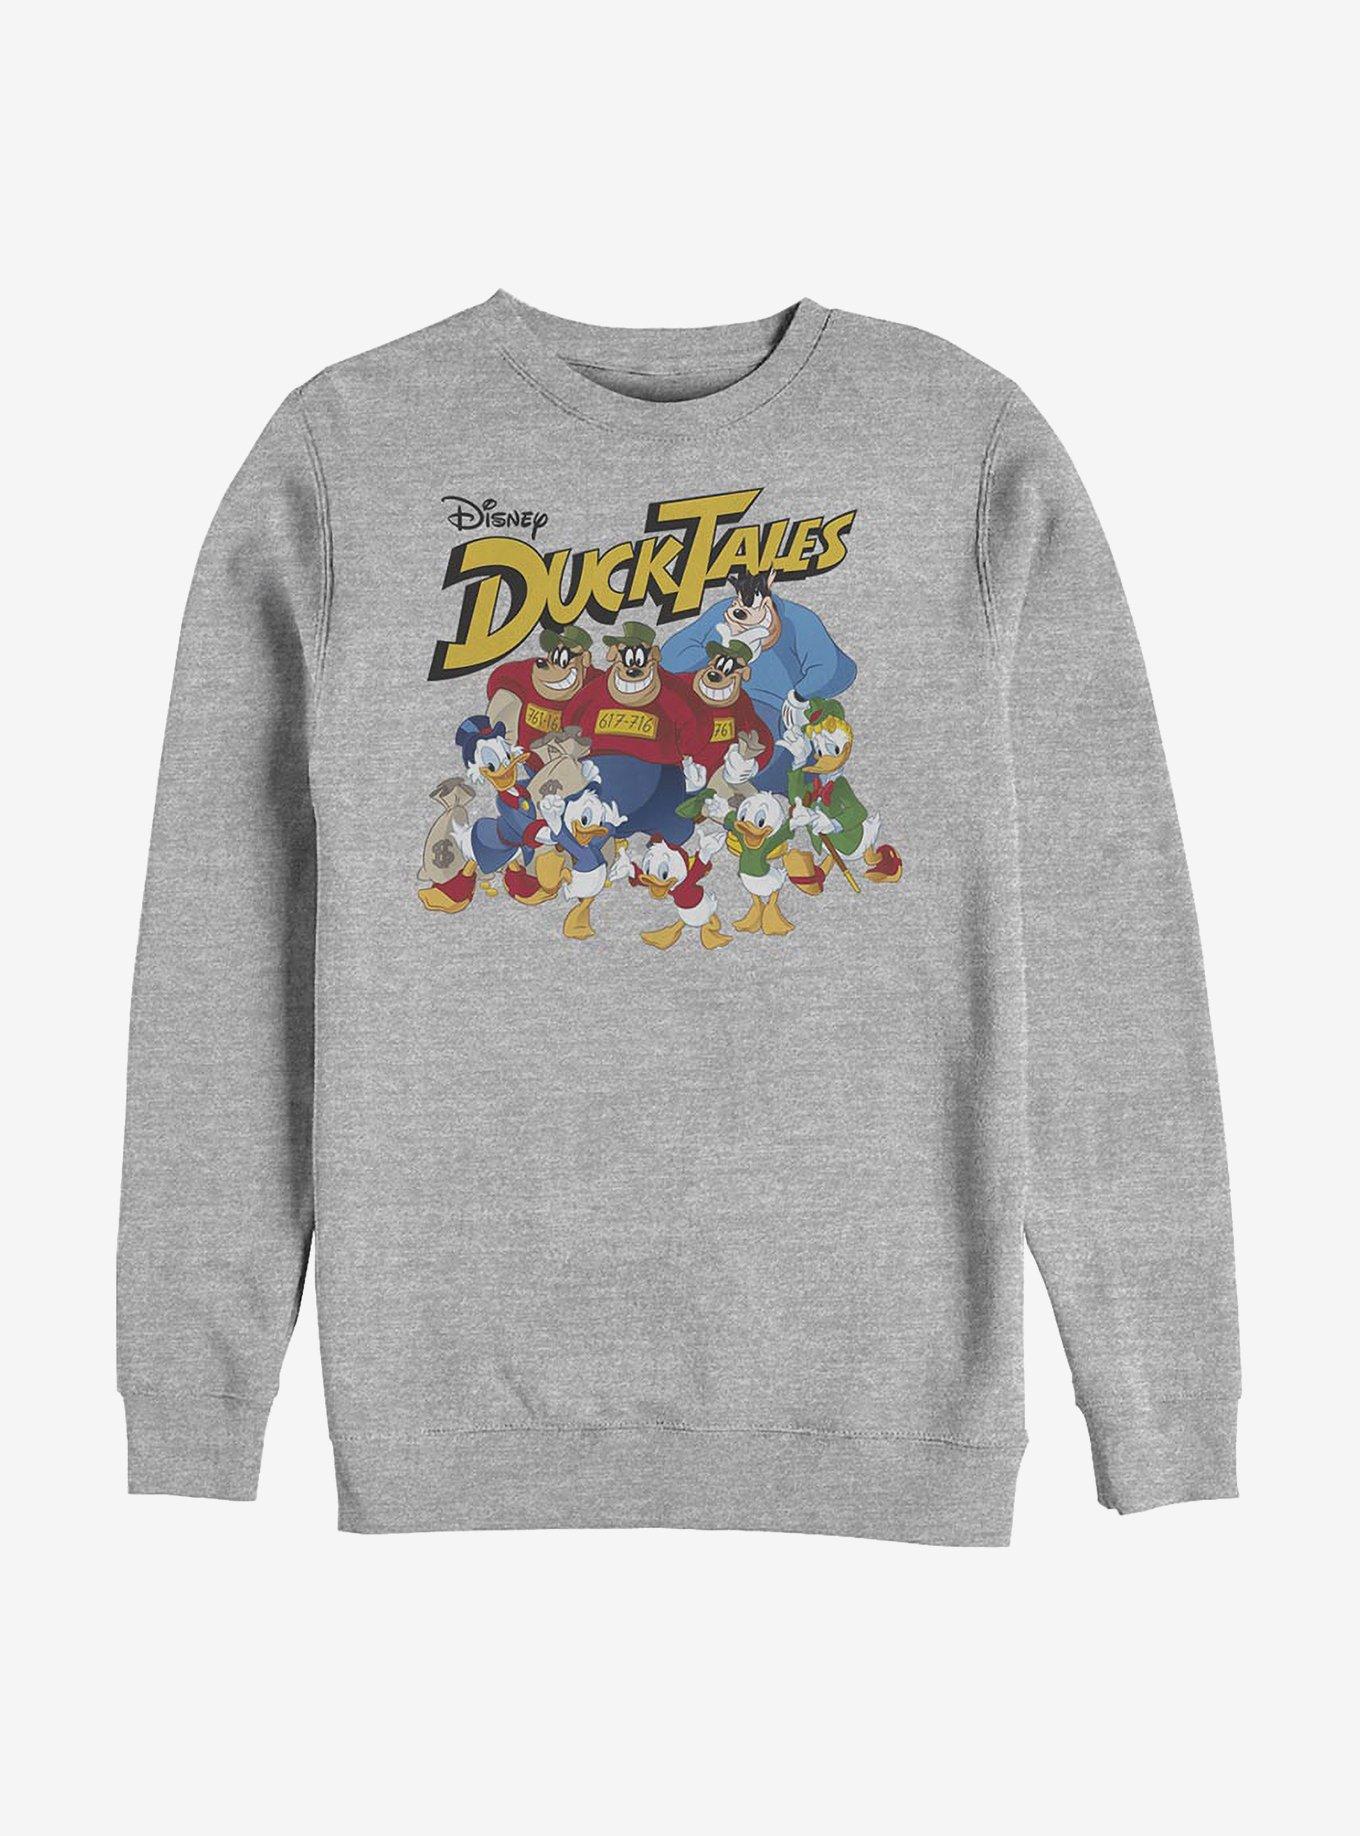 Disney Ducktales Group Shot Crew Sweatshirt